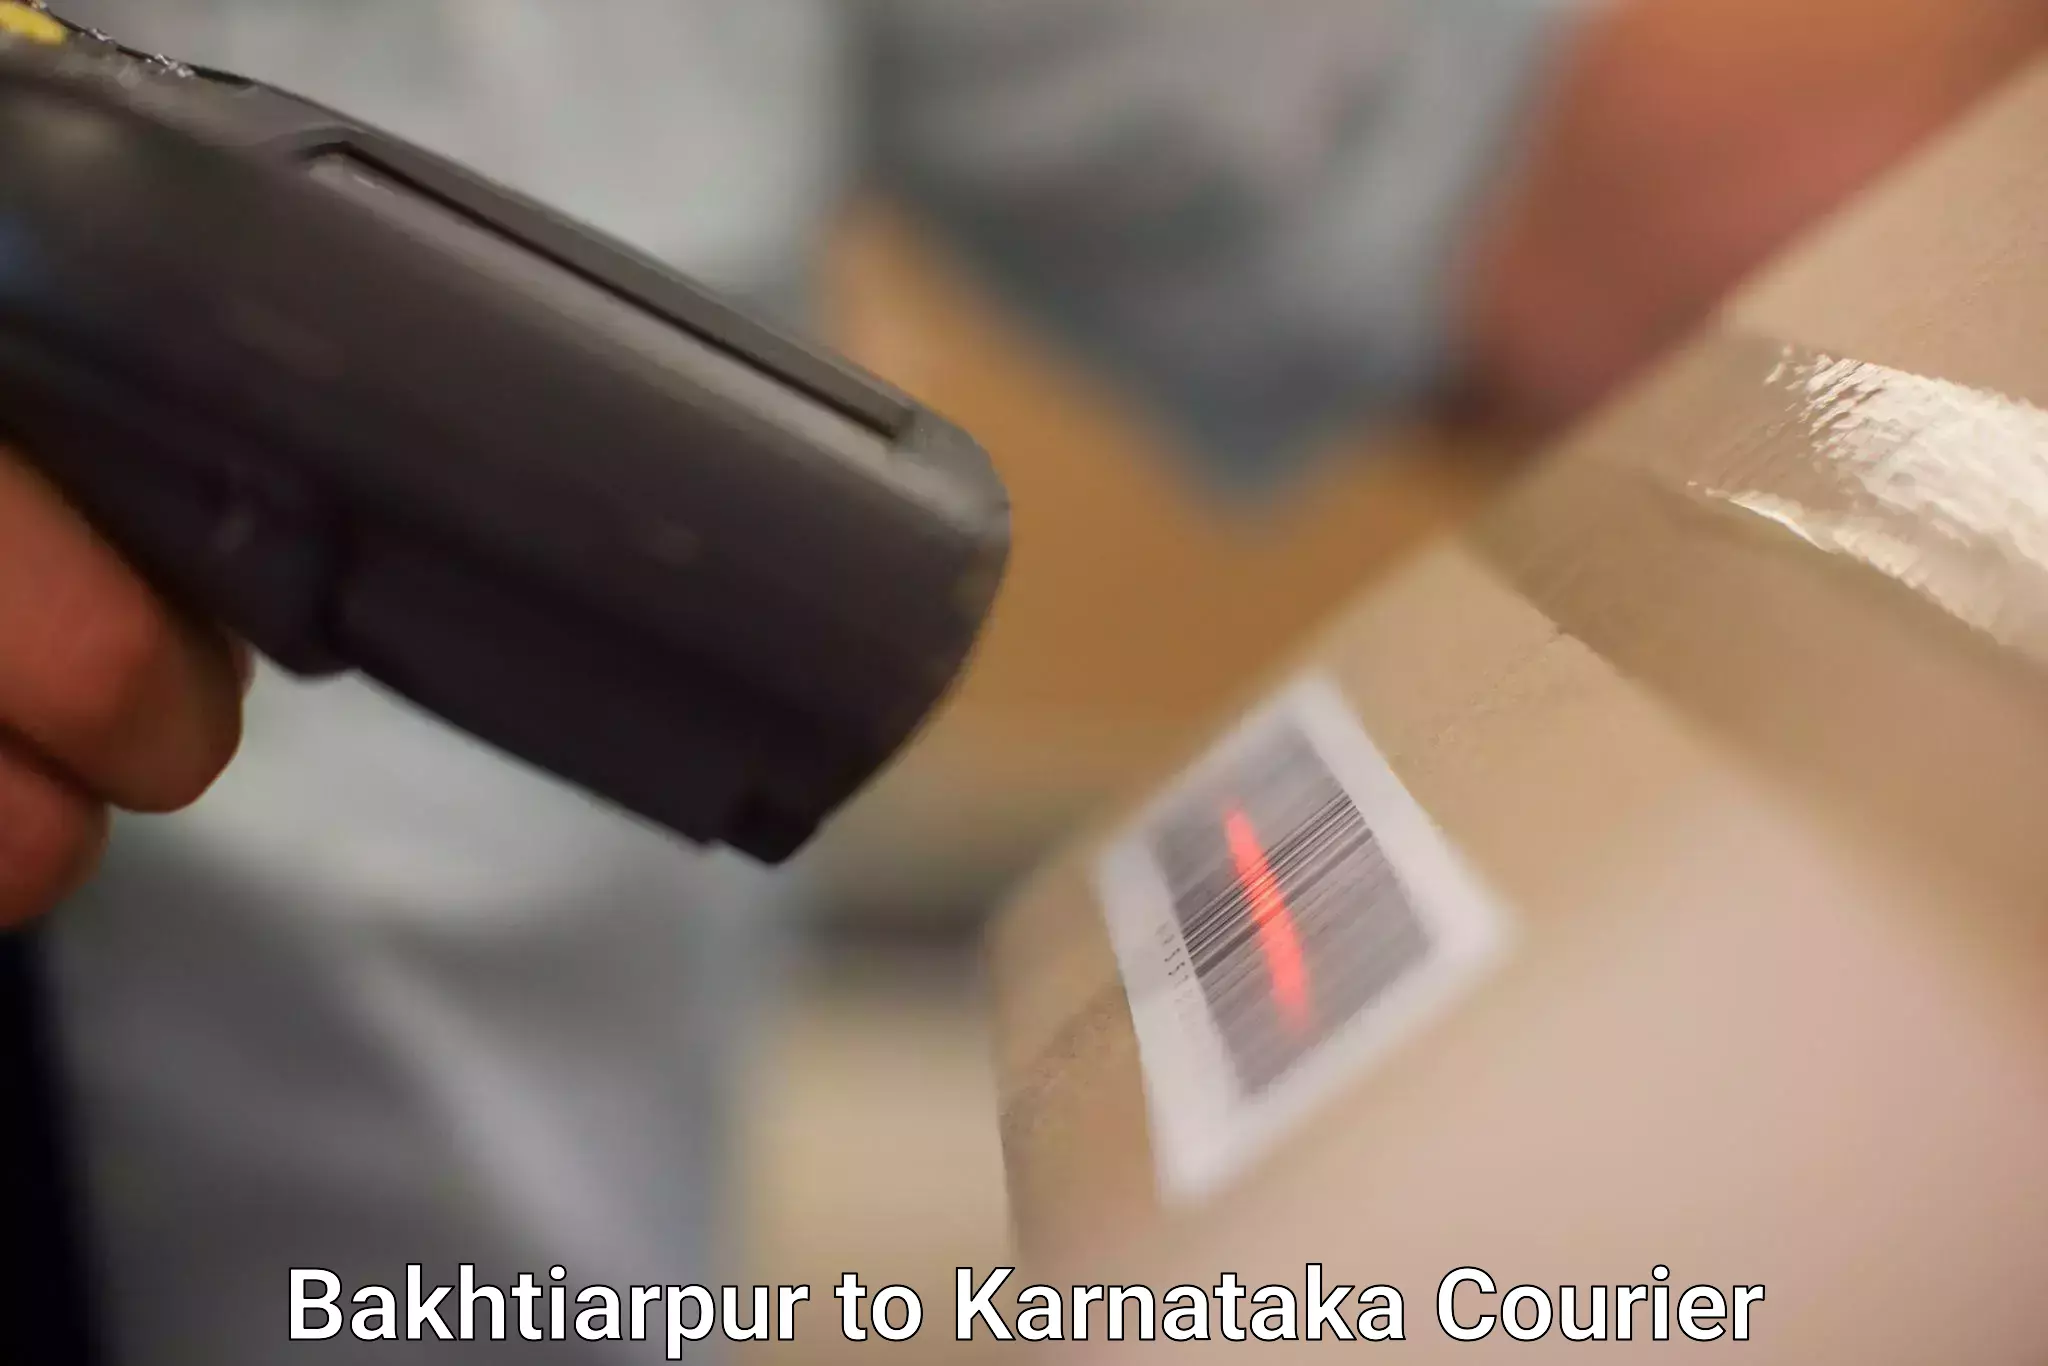 Versatile courier offerings Bakhtiarpur to Yadgiri